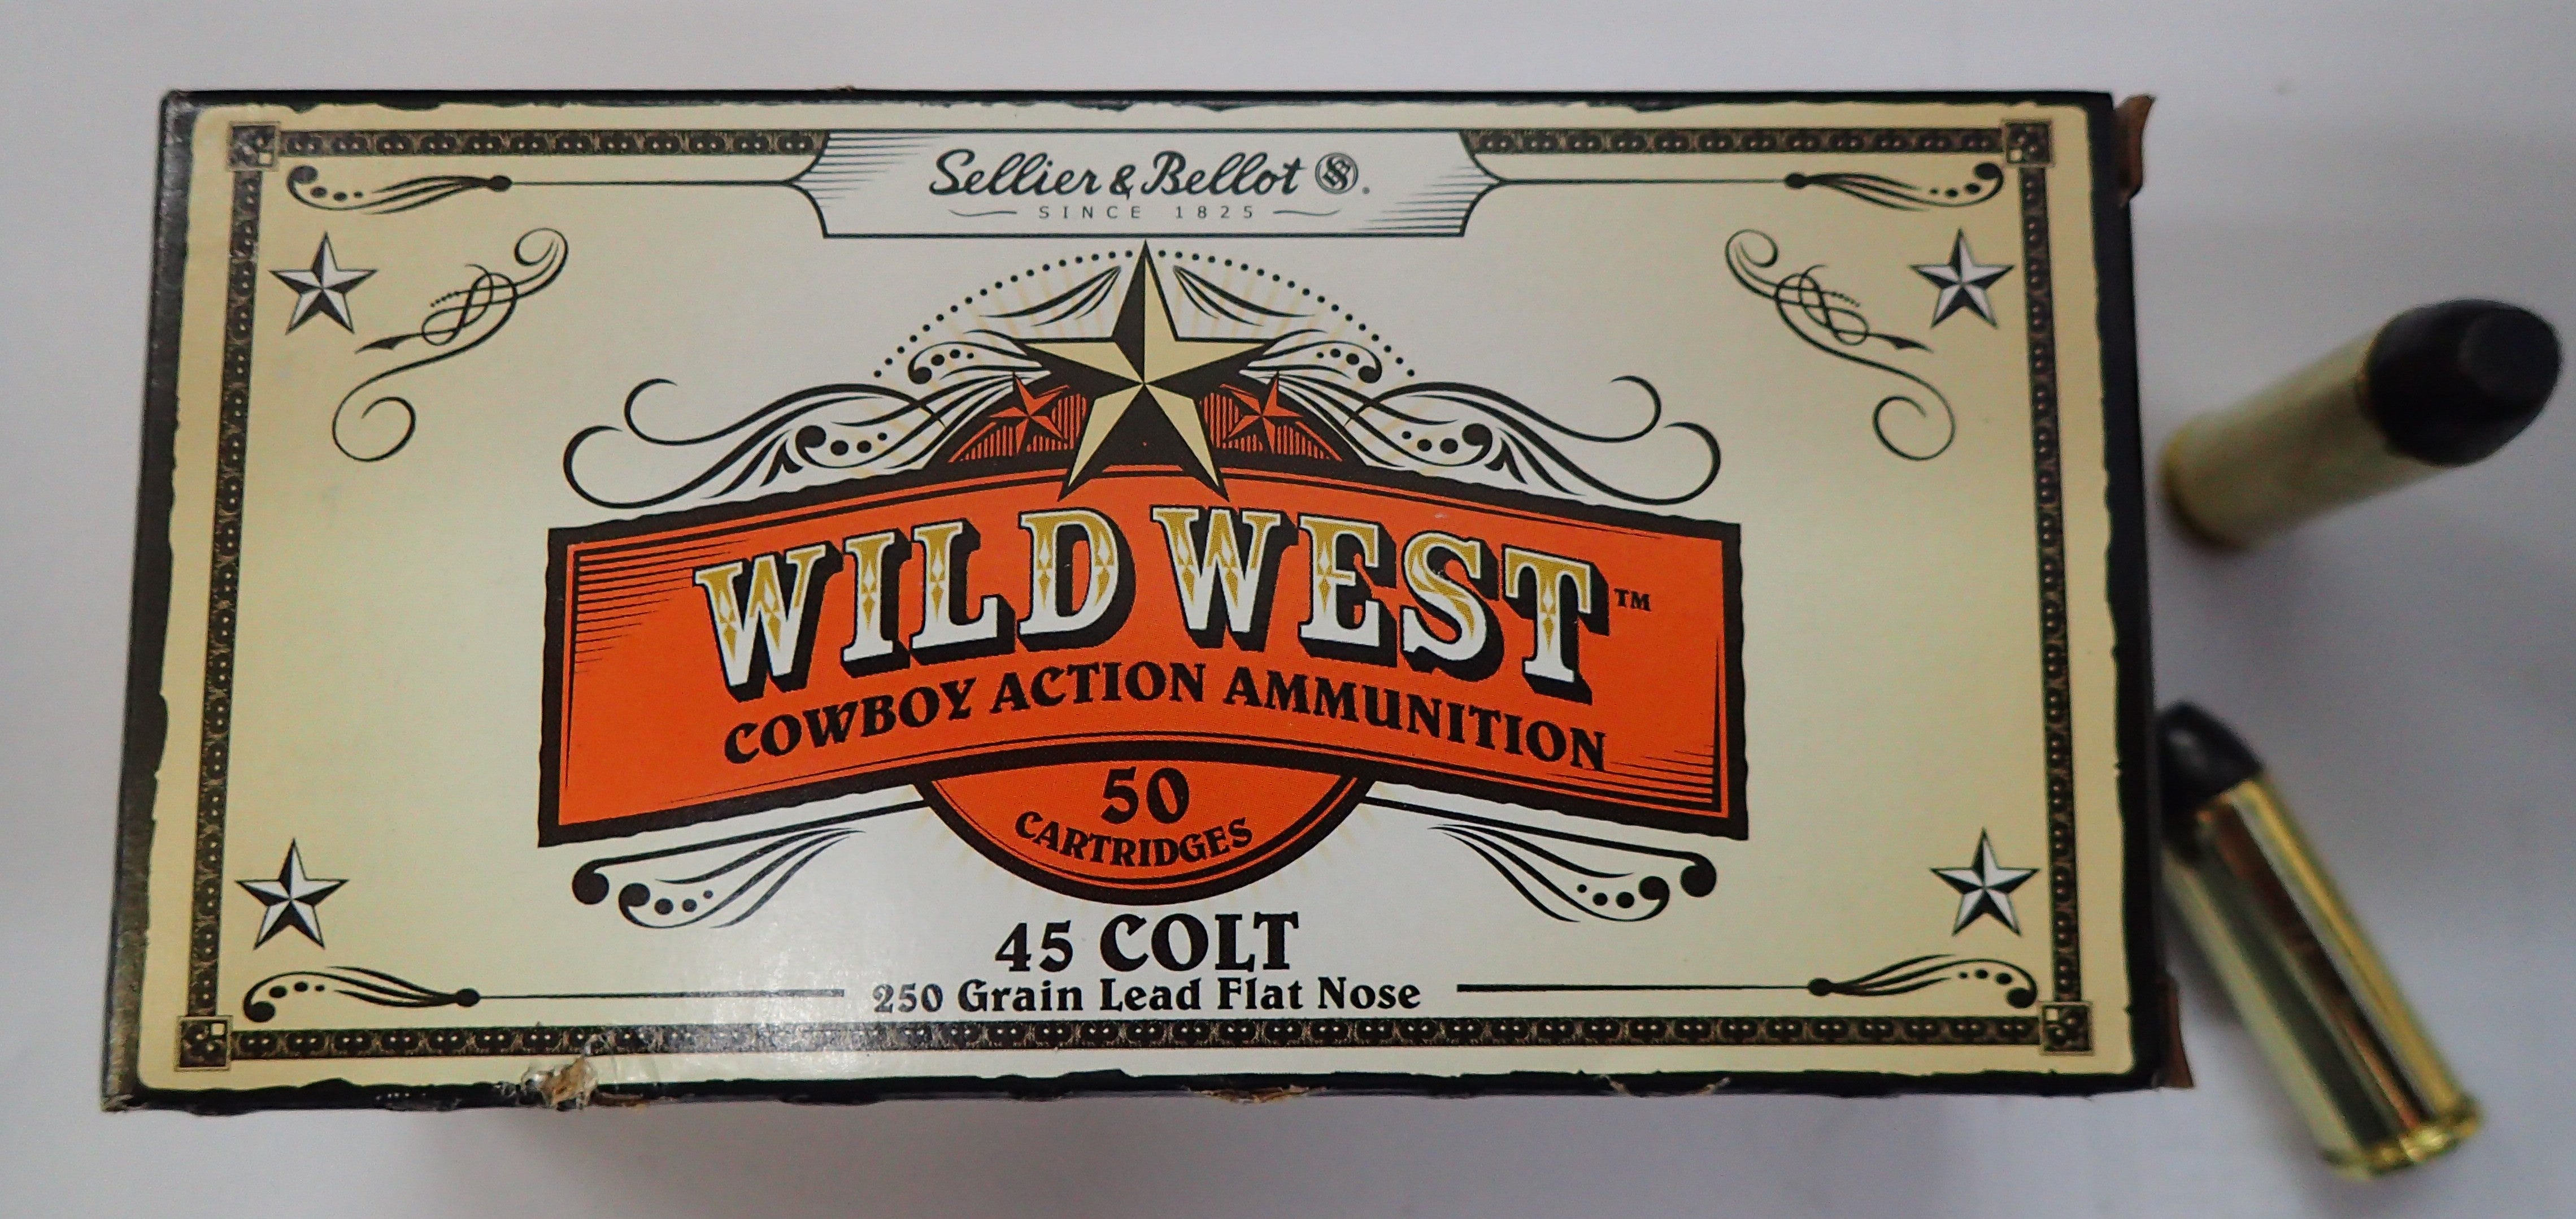 Sellier & Bellot Wild West Ammunition 45 Long Colt 250 Grain Lead Flat Nose (50pk) (311792)